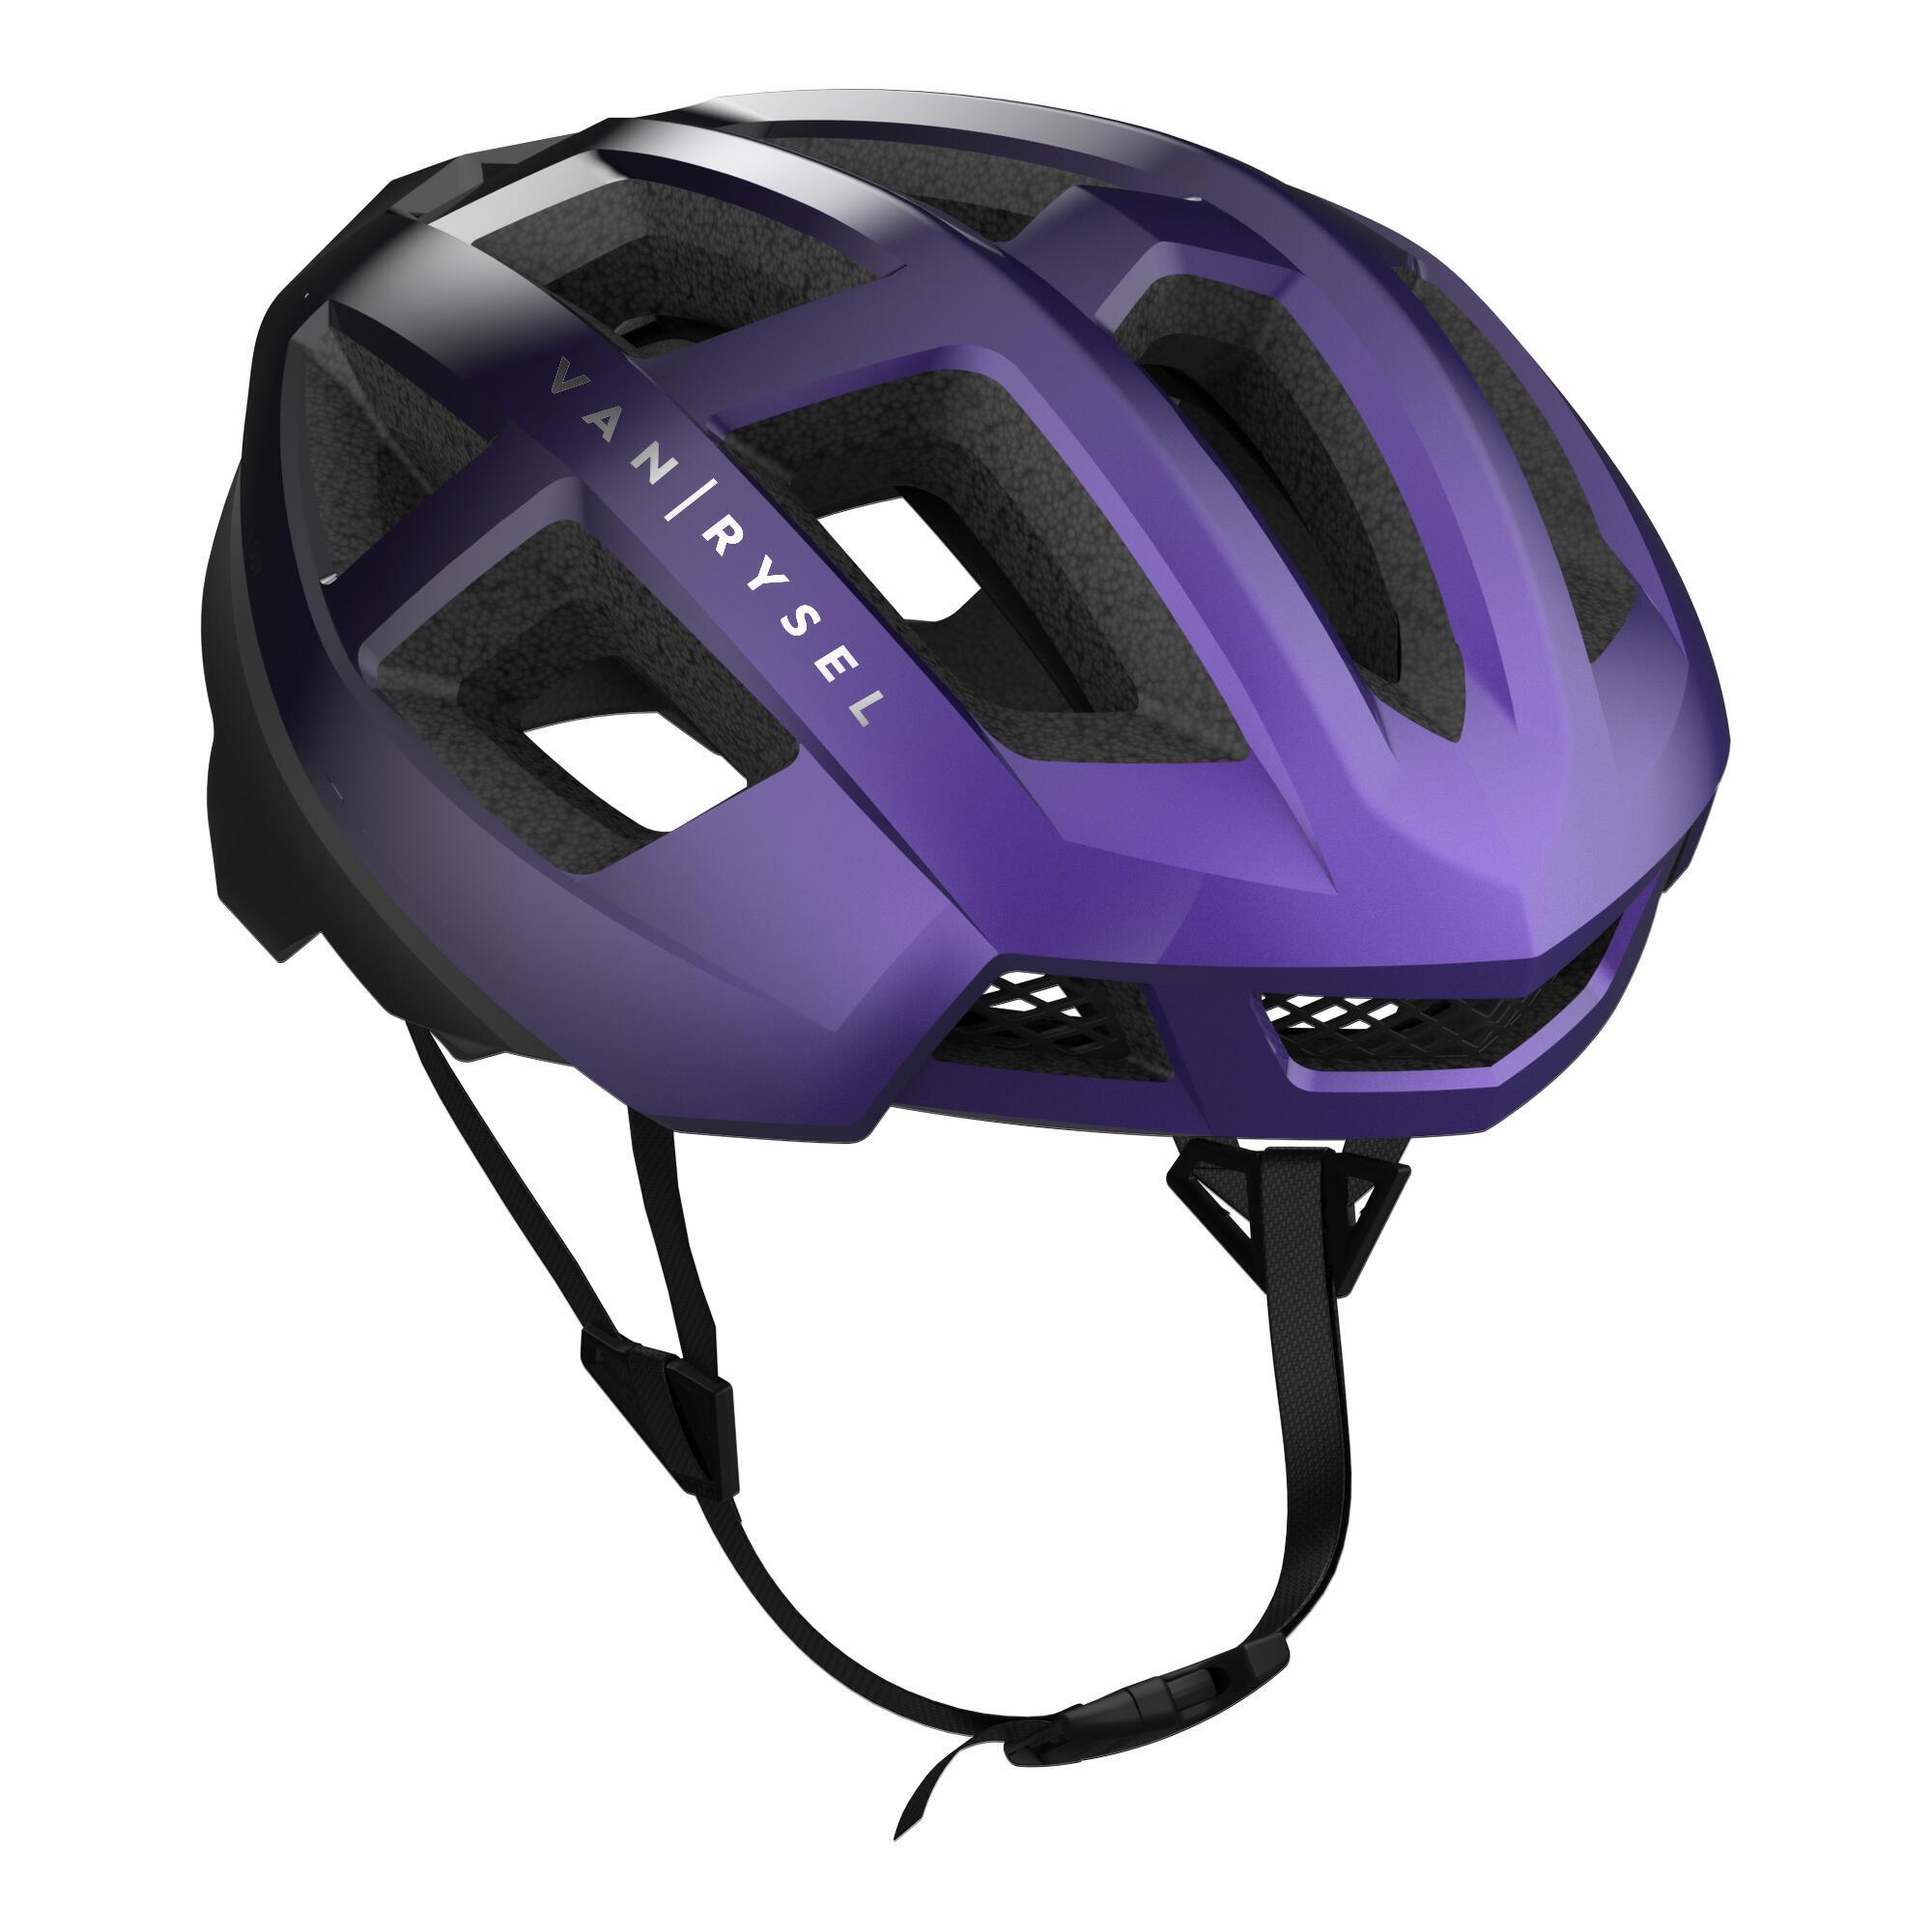 VAN RYSEL RoadR 900 Road Cycling Helmet - Purple/Black